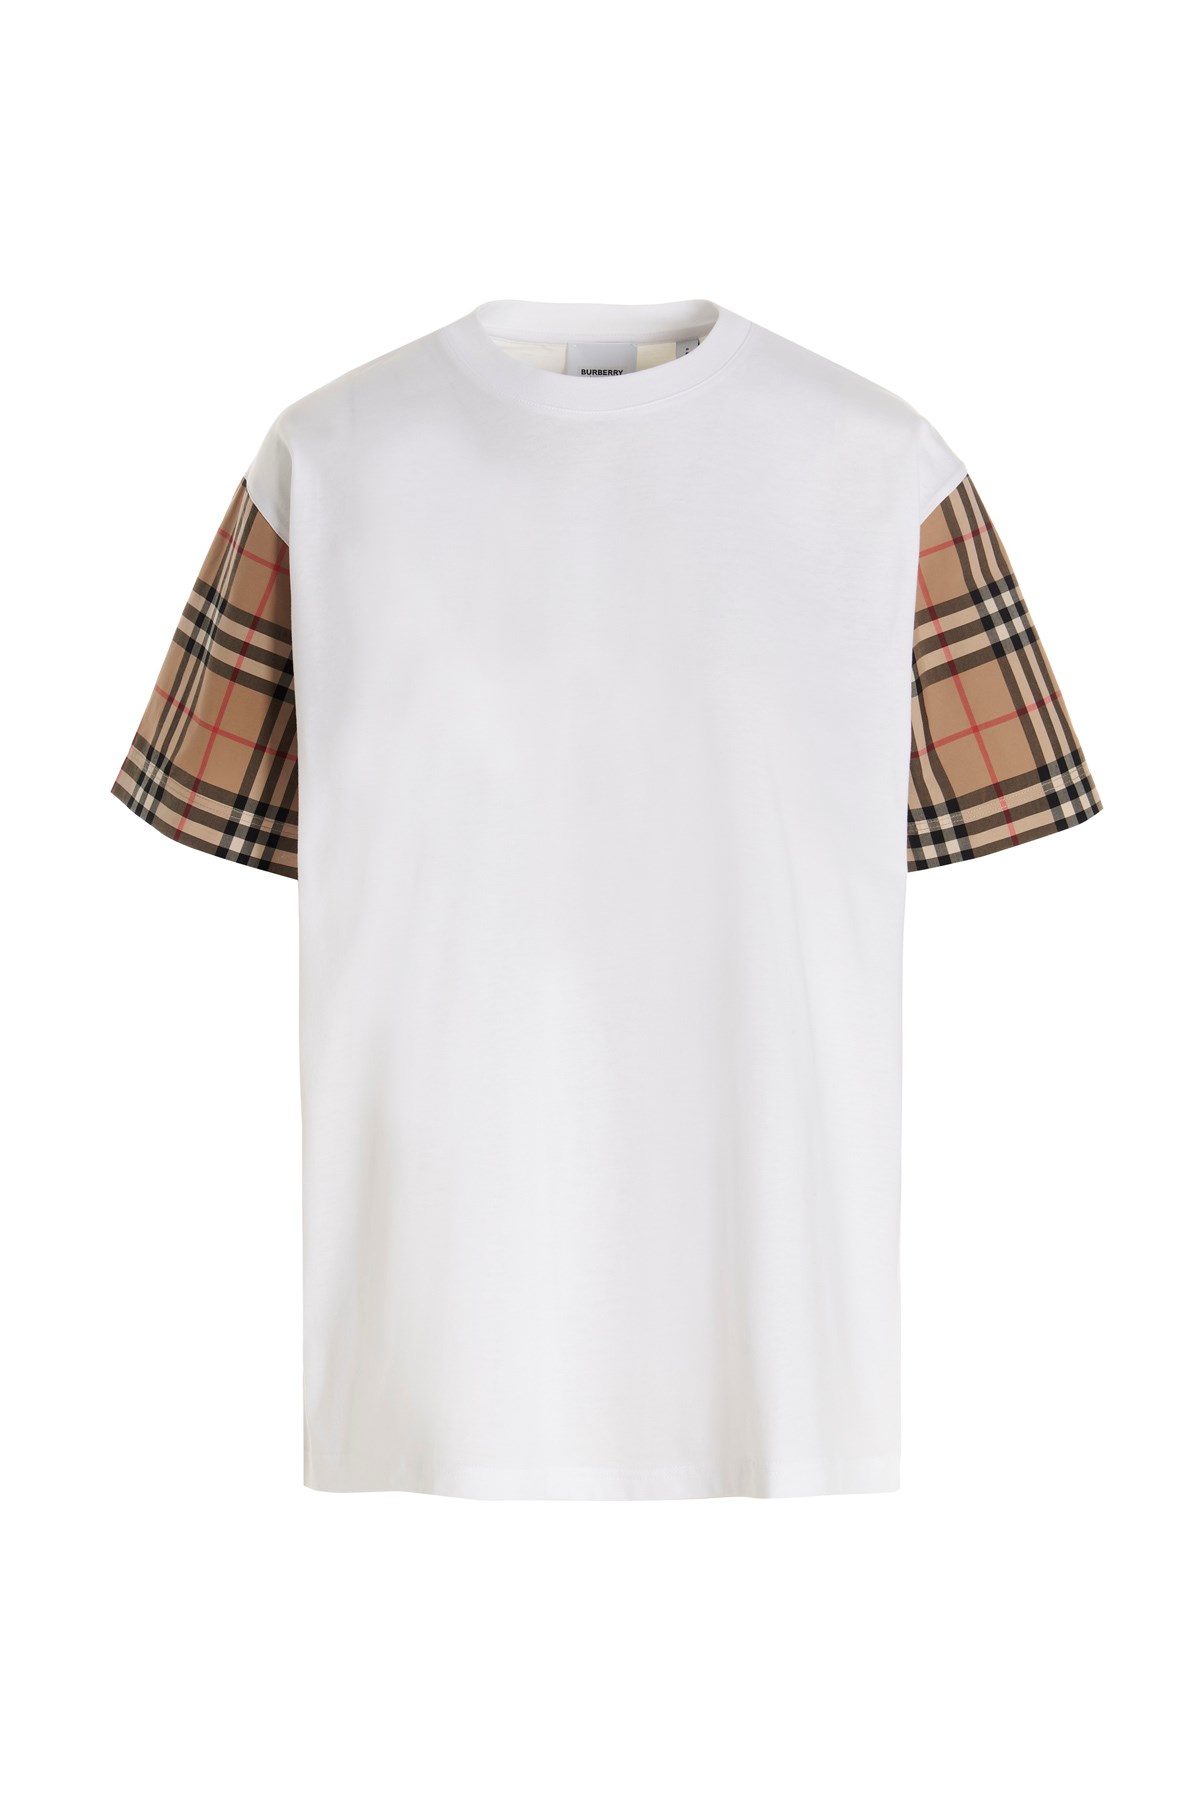 BURBERRY 'Carrick' T-Shirt